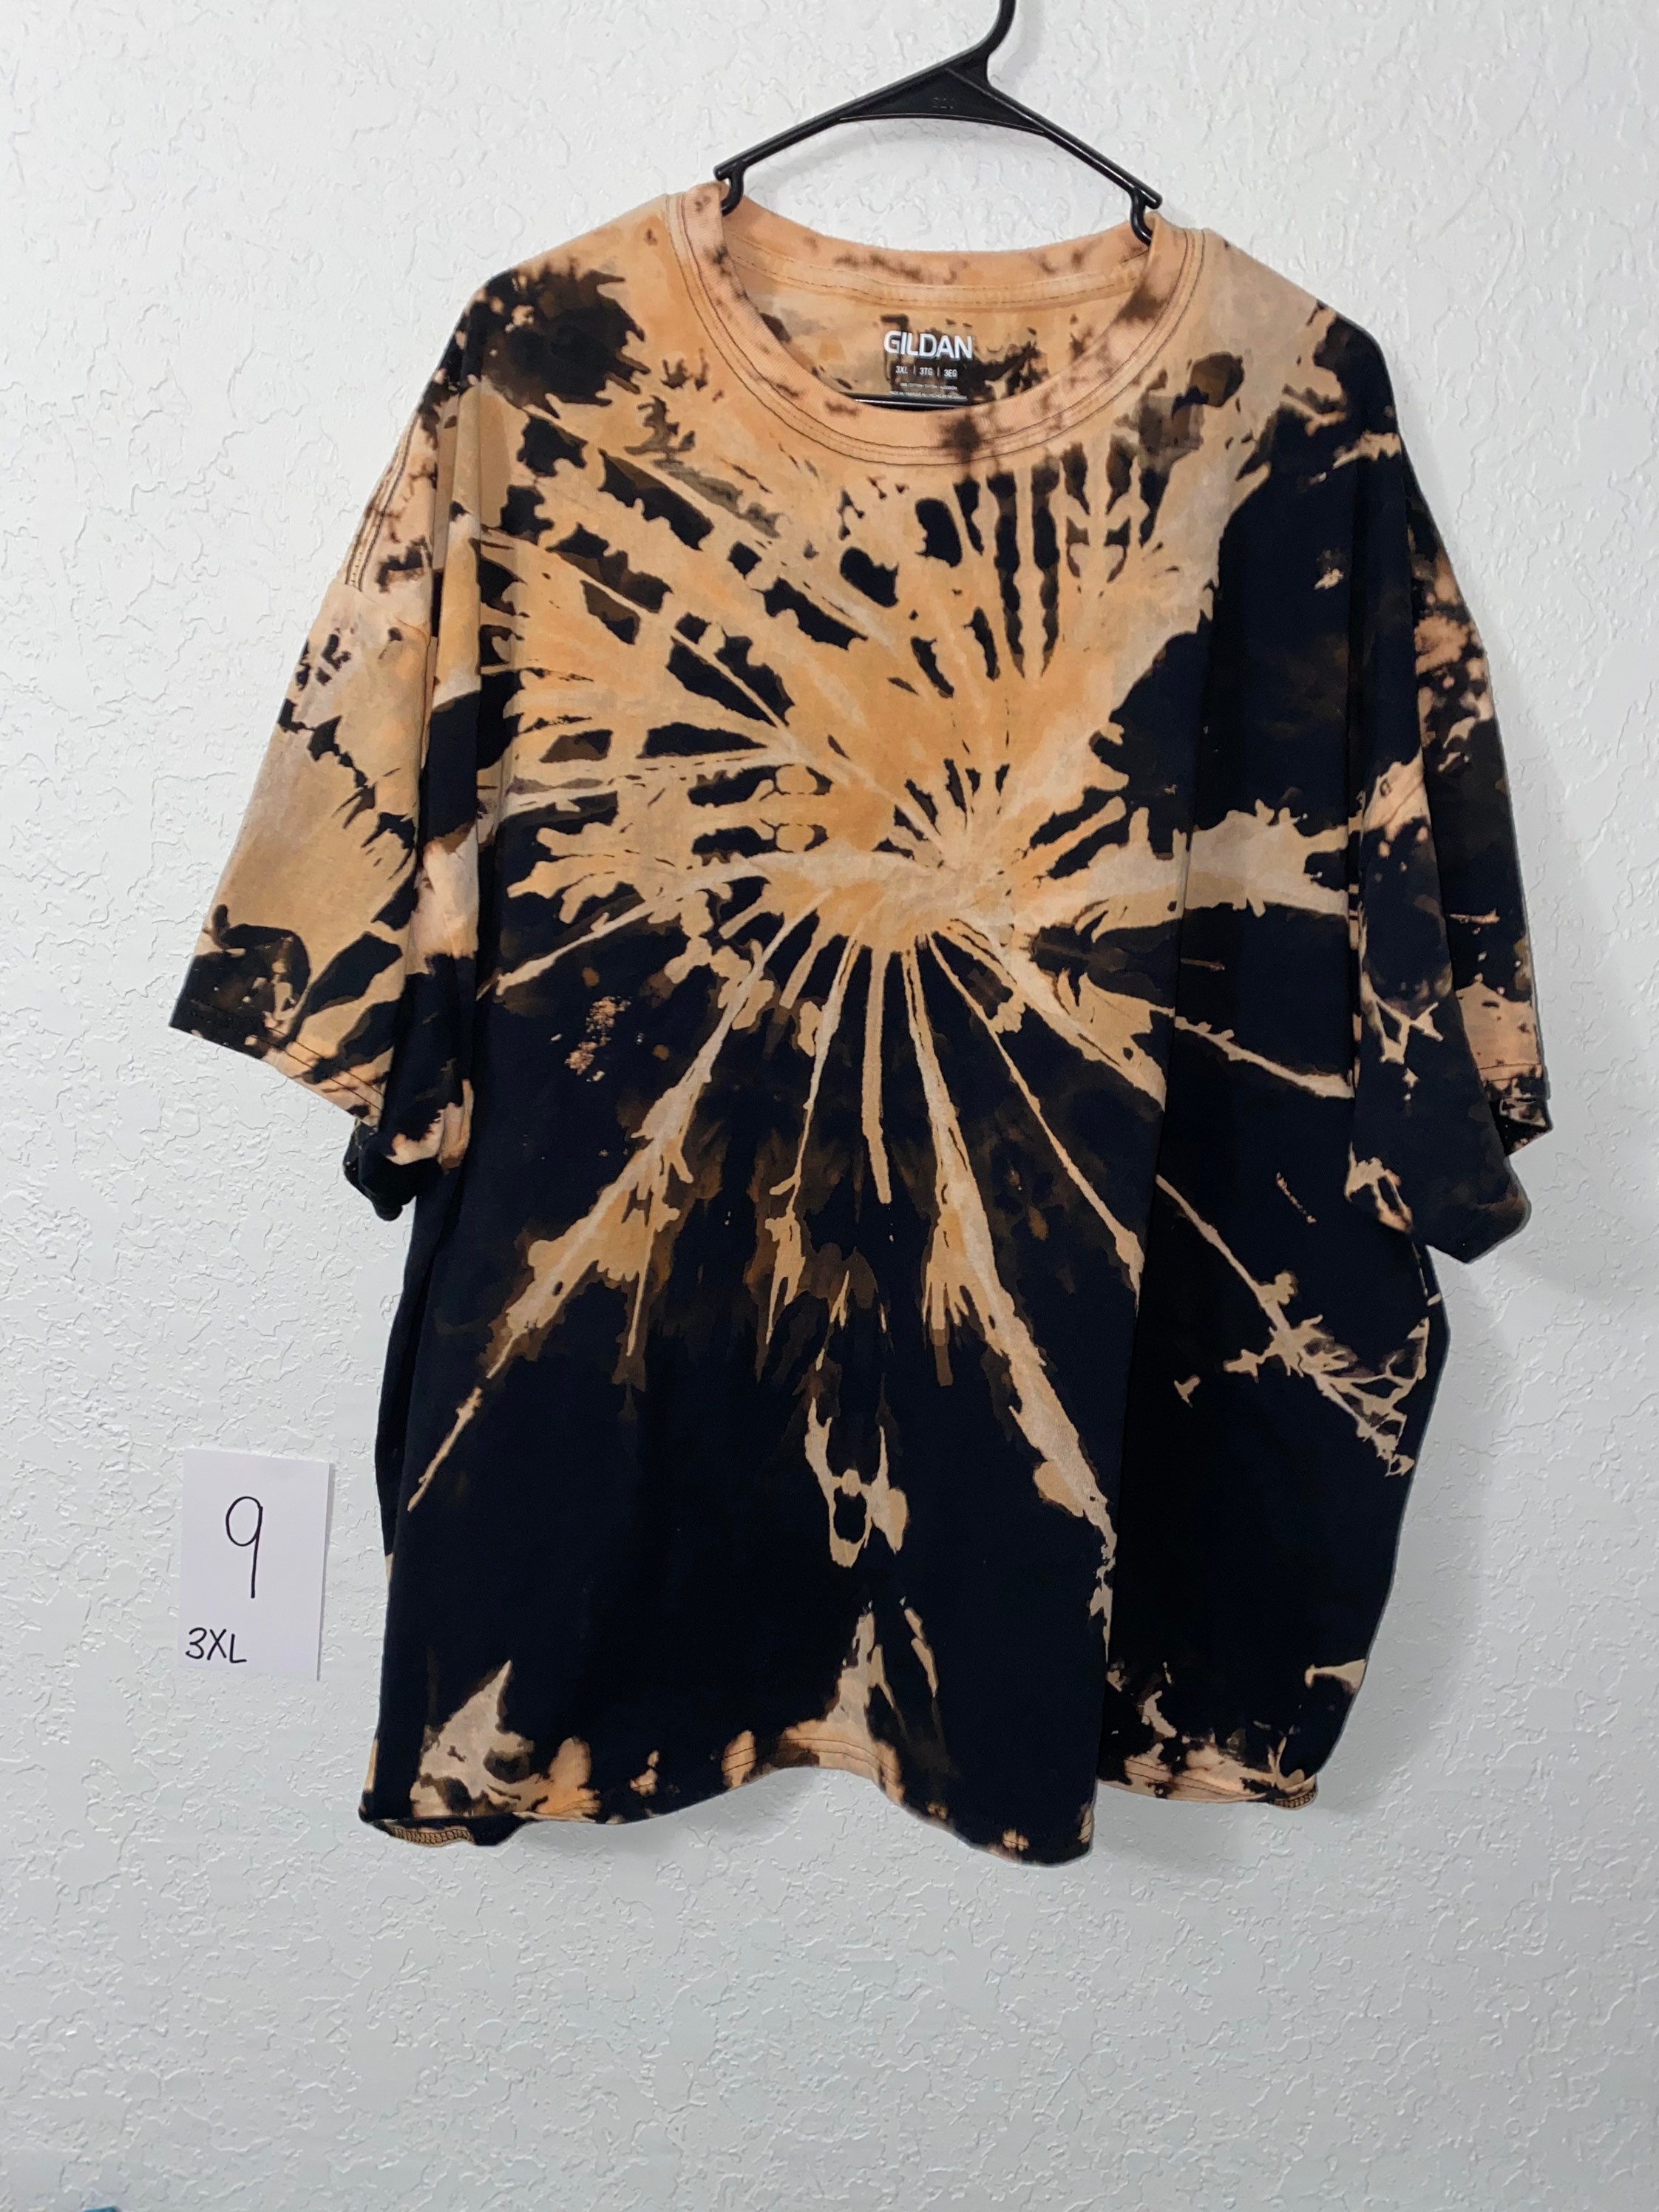 Bleach Tye Dye Tshirts - Etsy